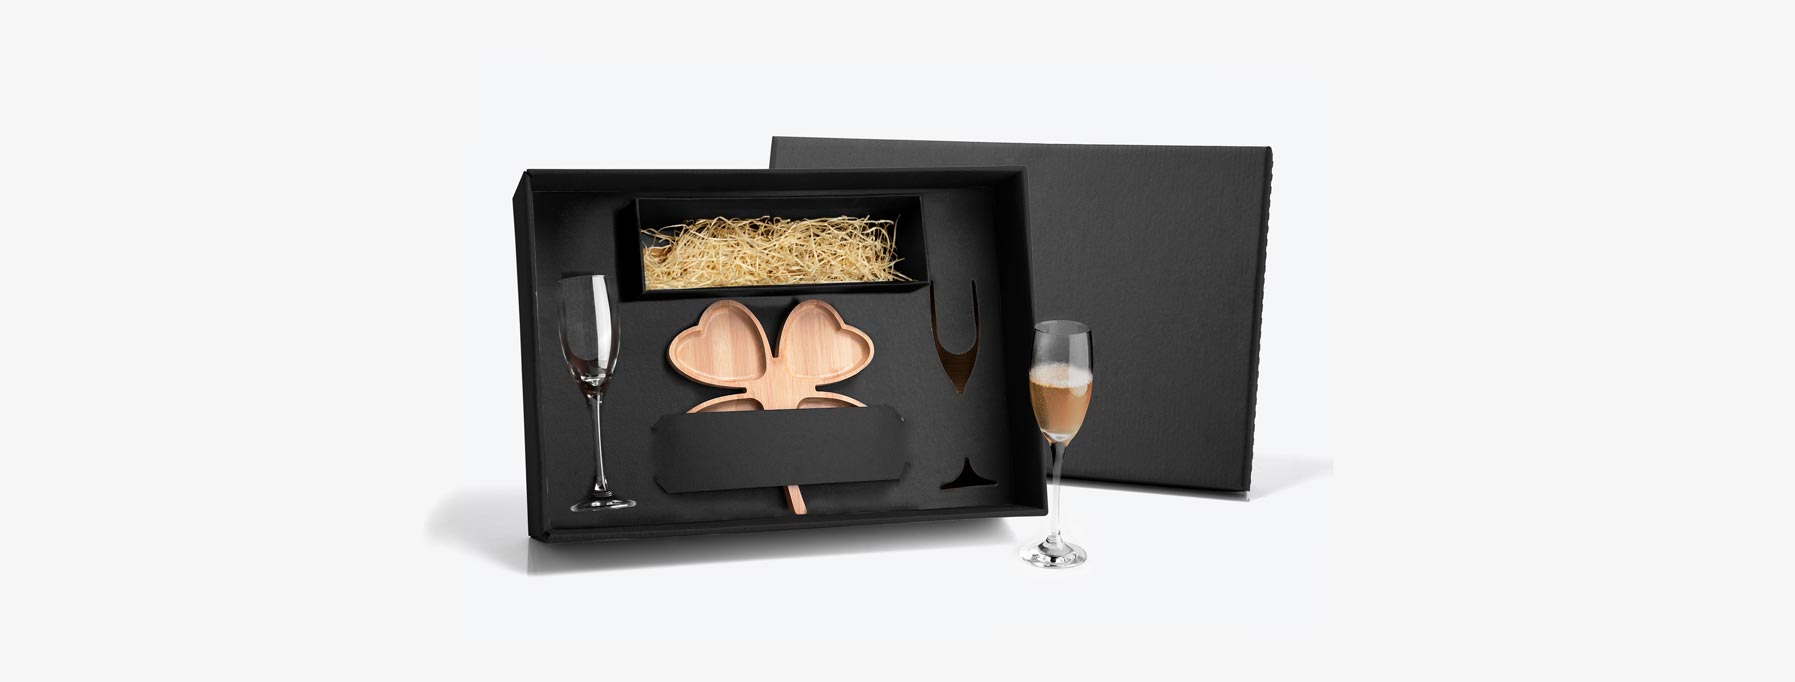 Kit para Petisco e Champagne; Conta com petisqueira formato de trevo em Bambu; Duas taças para champagne em vidro; Espaço para garrafa com palha (NÃO ACOMPANHA GARRAFA). Estão perfeitamente acomodados em uma caixa para presentear.